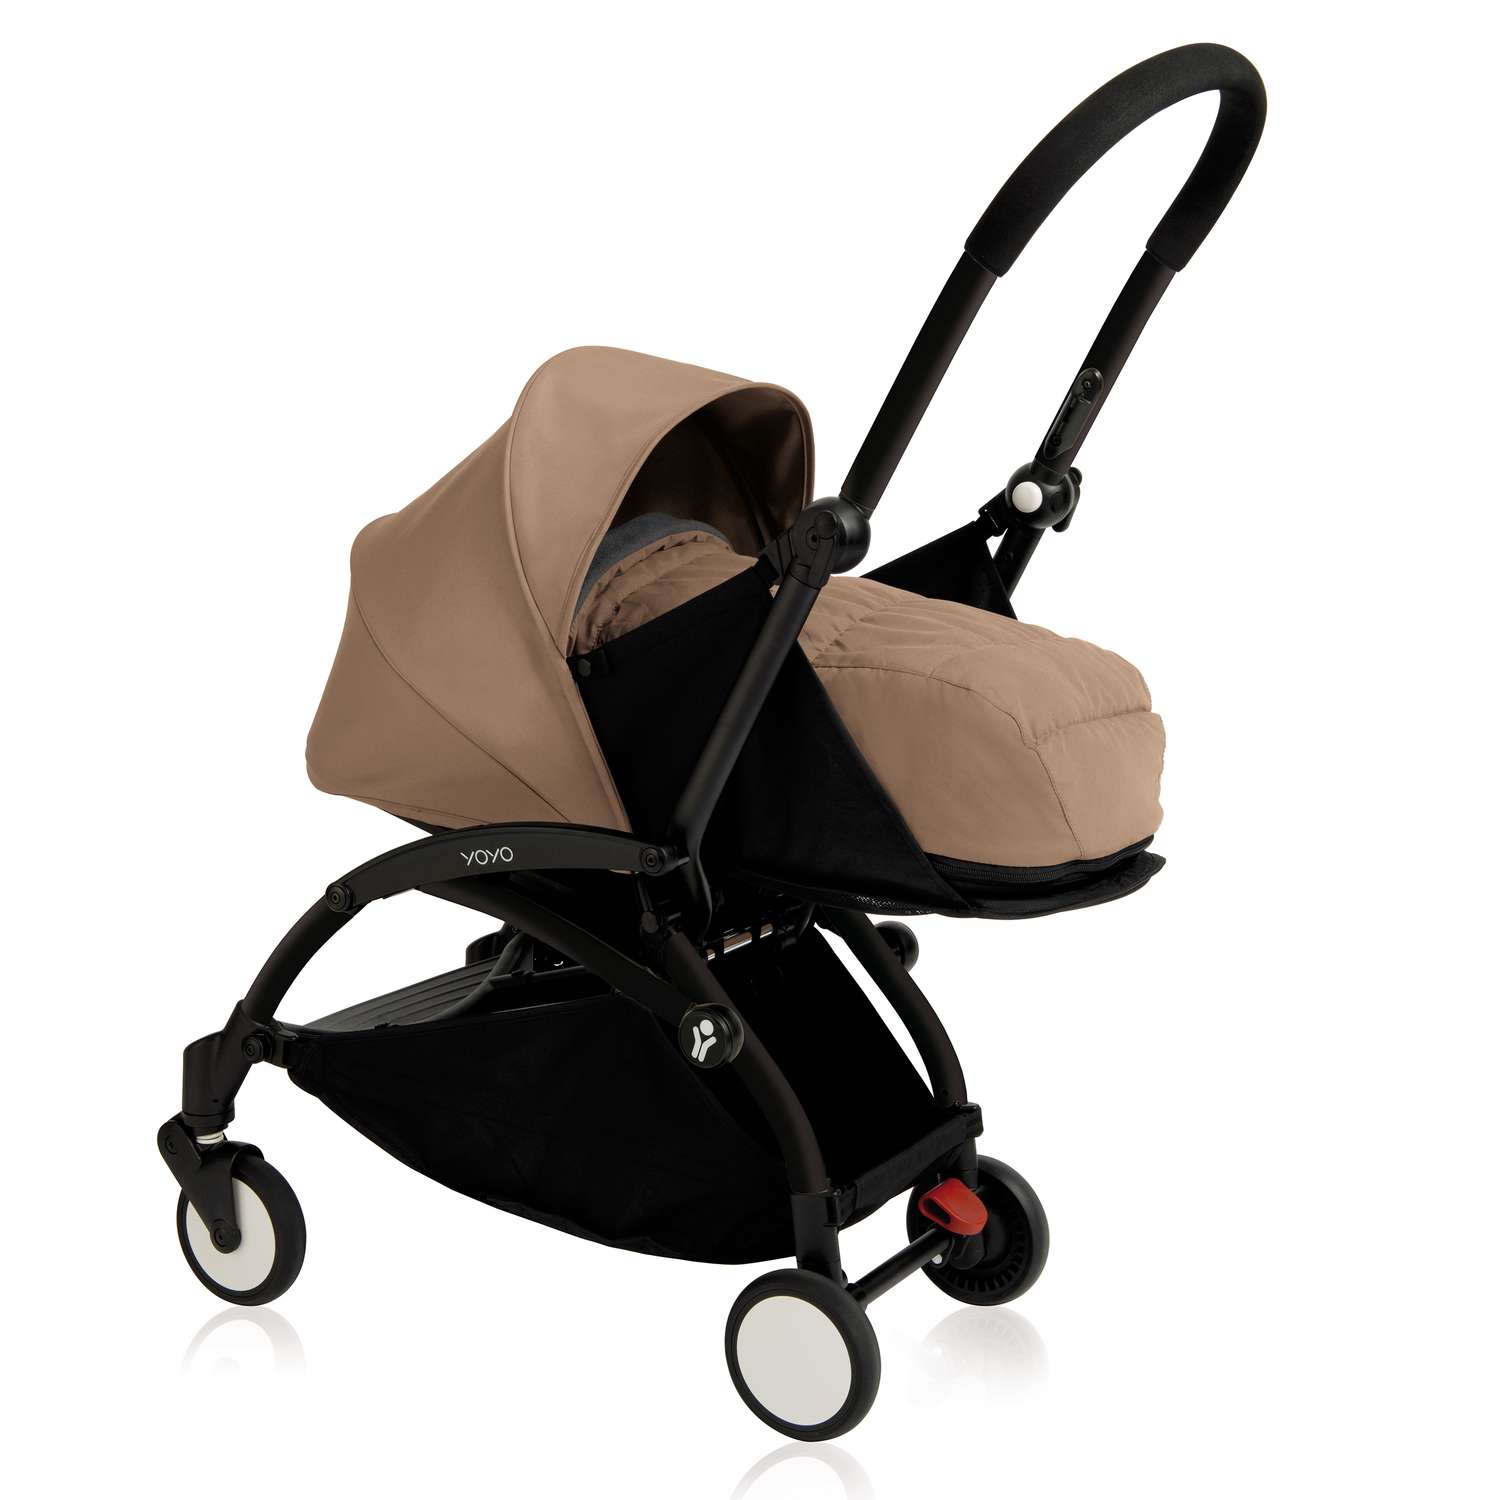 Комплект люльки для новорожденного к коляске Babyzen Yoyo Plus Кротовый BZ10105-06 - фото 2